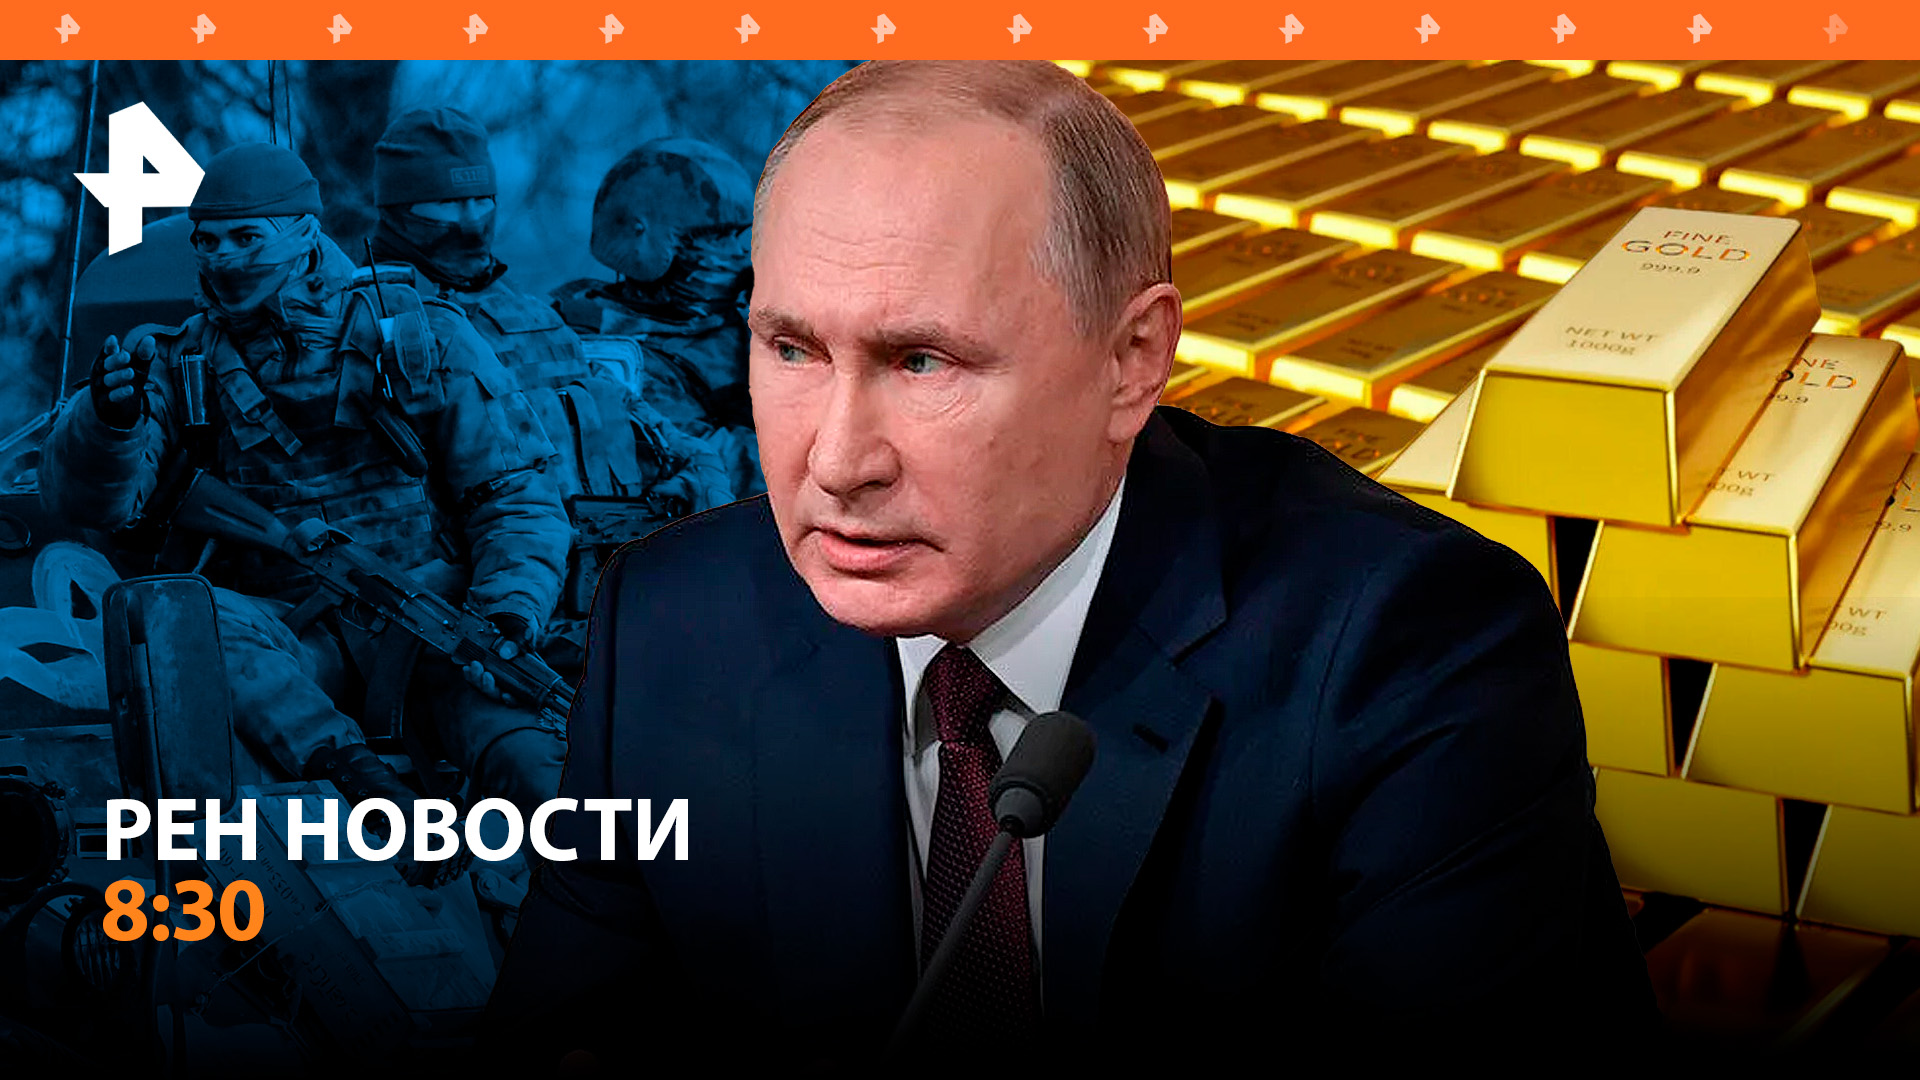 Путин о приговорах по Украине, "золотом миллиарде" и тесном партнерстве с Китаем / РЕН Новости 8:30